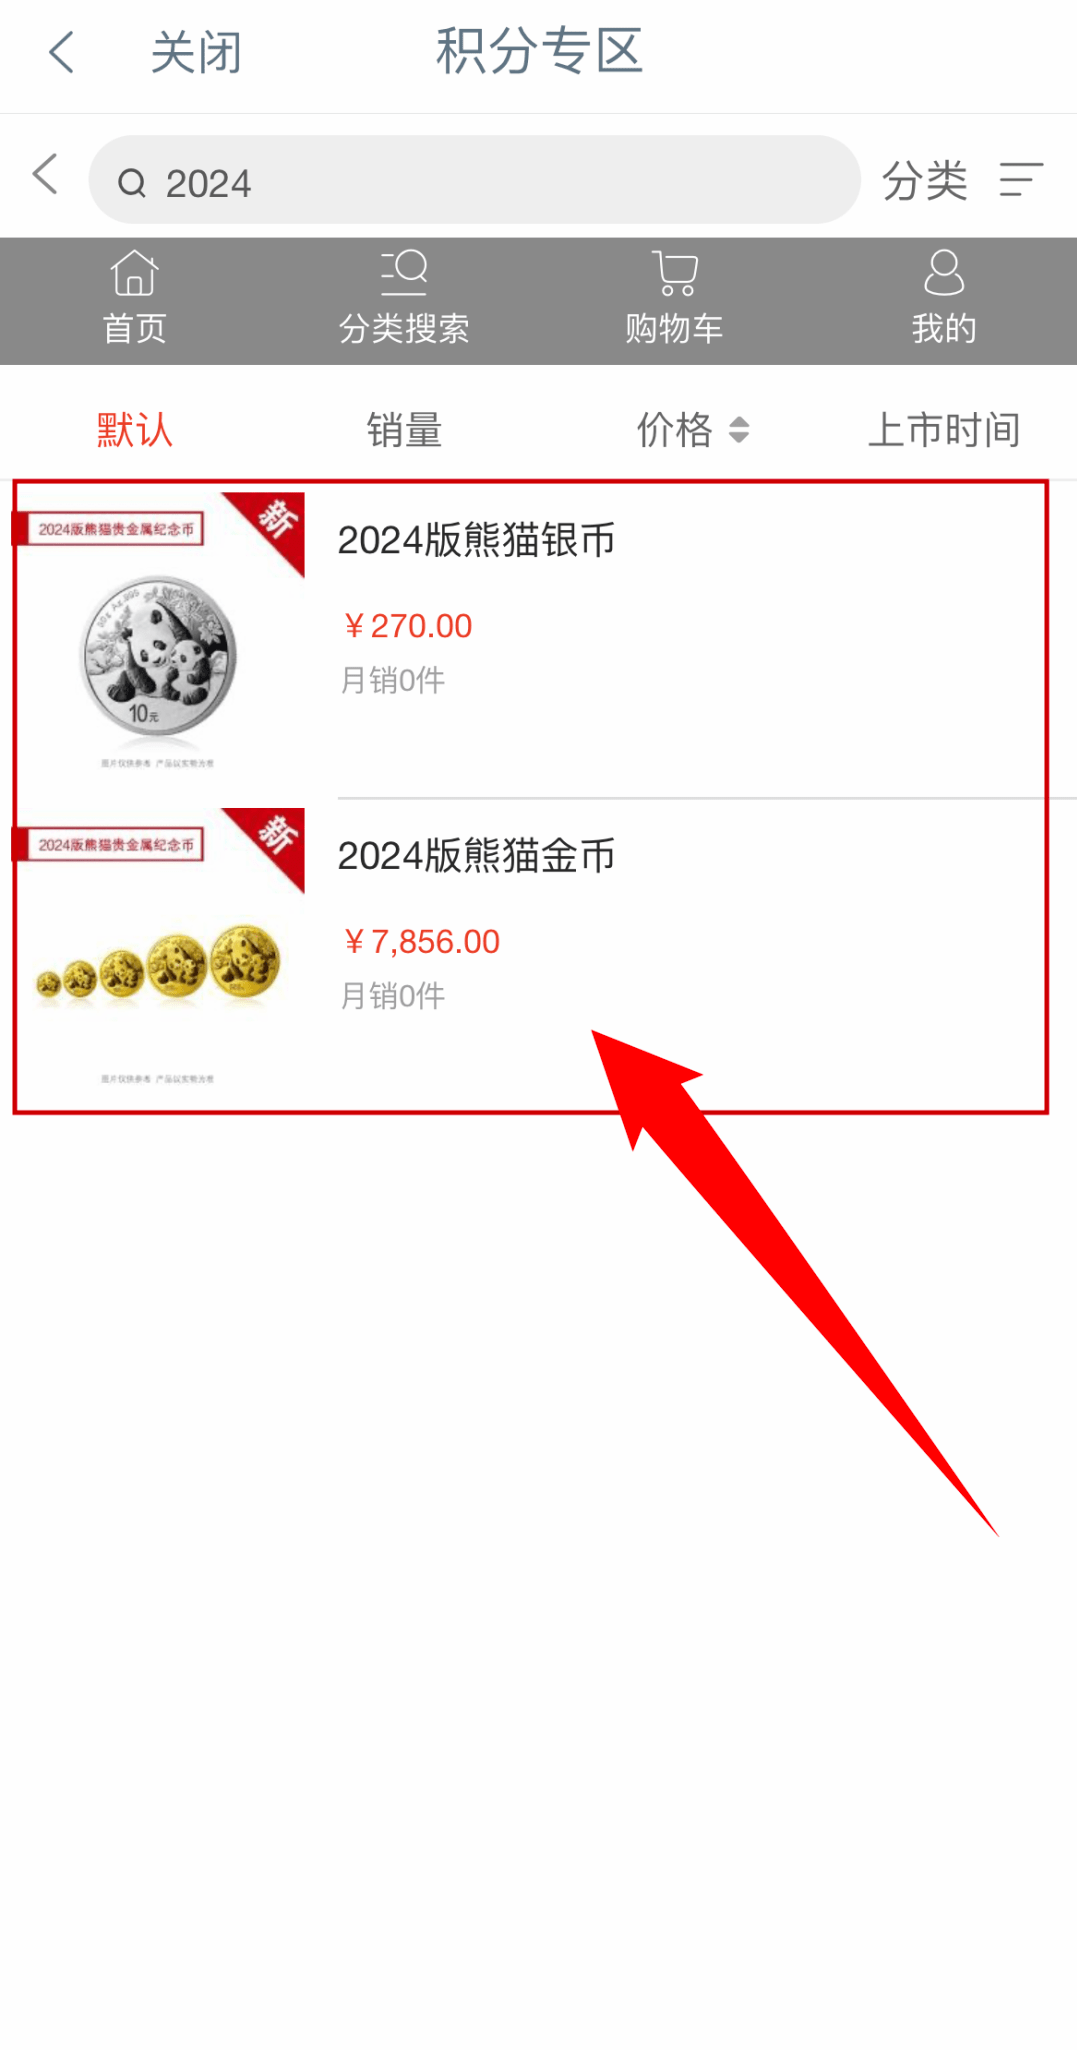 今日开售丨2024版熊猫贵金属纪念币工行开启销售！